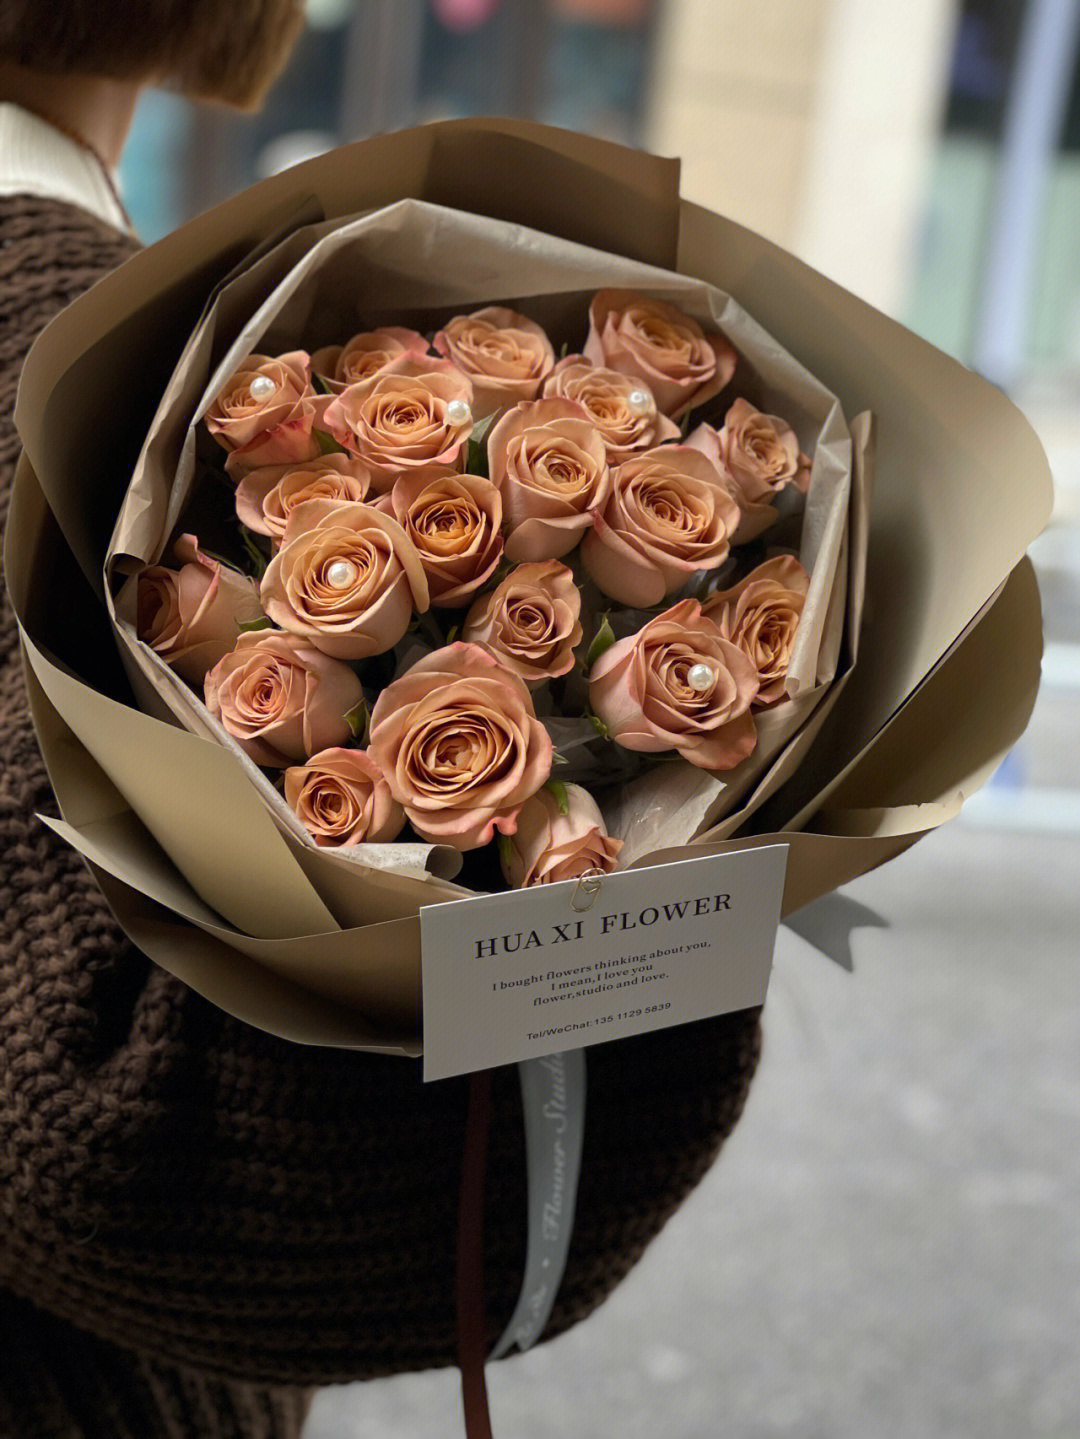 19朵卡布奇诺玫瑰花语图片